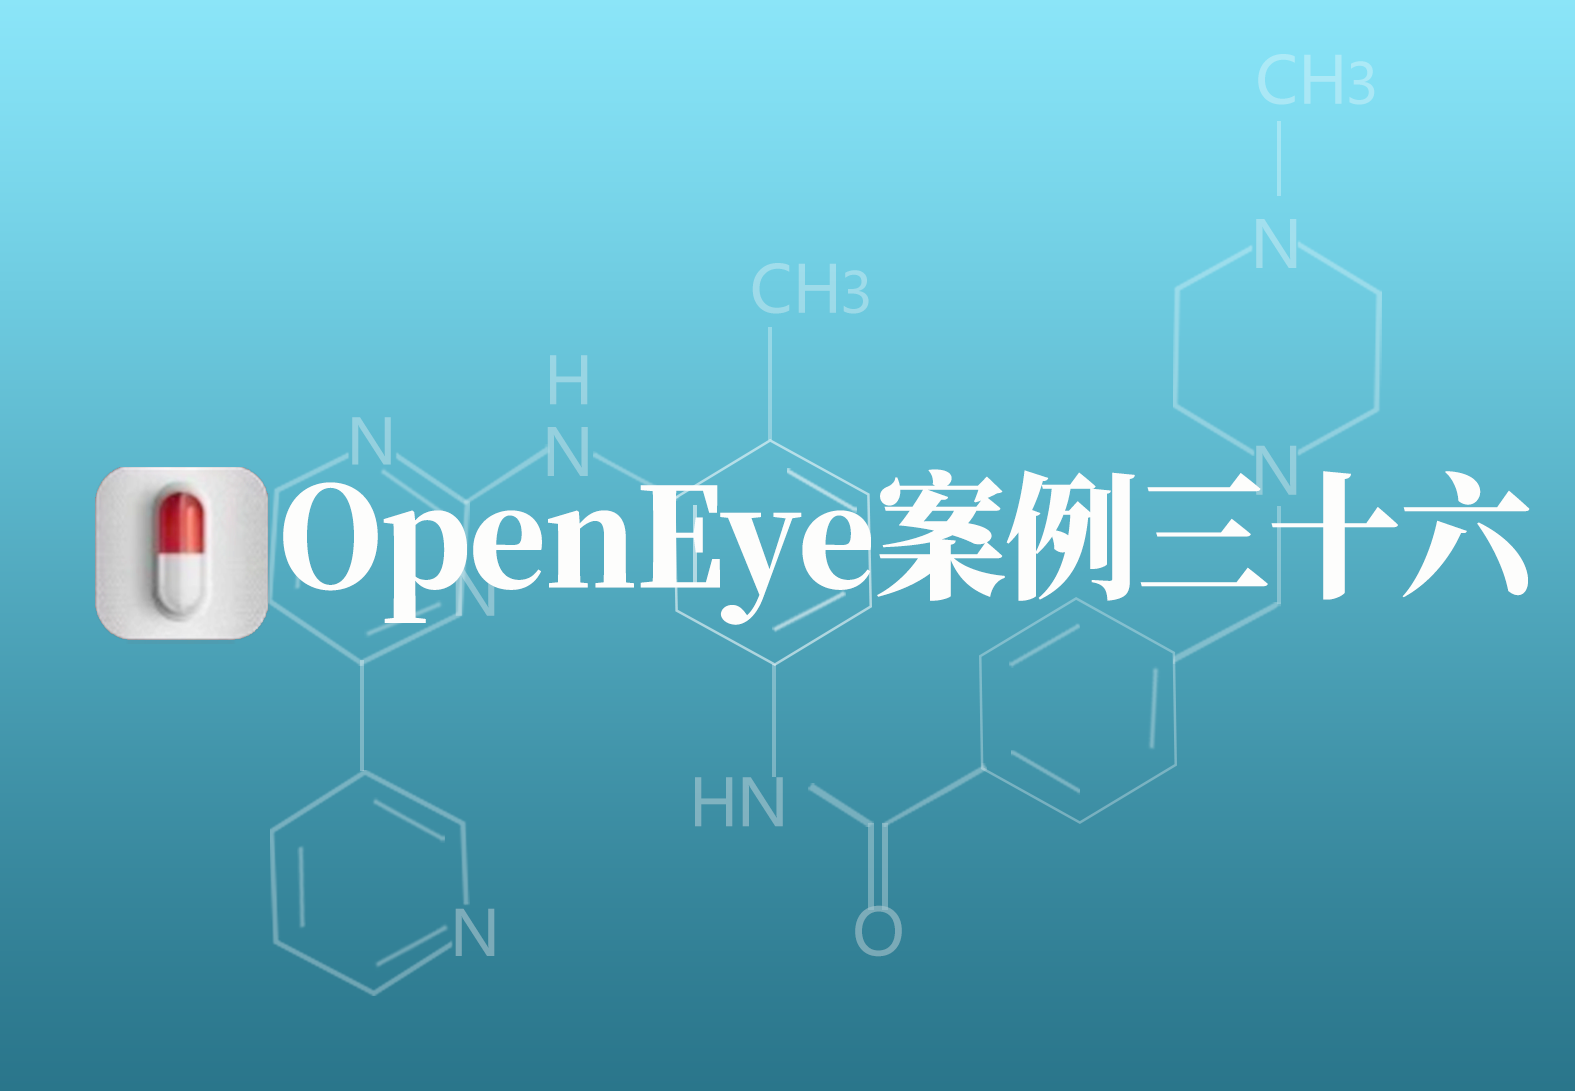 OpenEye应用案例三十六：分子相似性搜索方法确定有毒化合物甲苯的潜在靶标